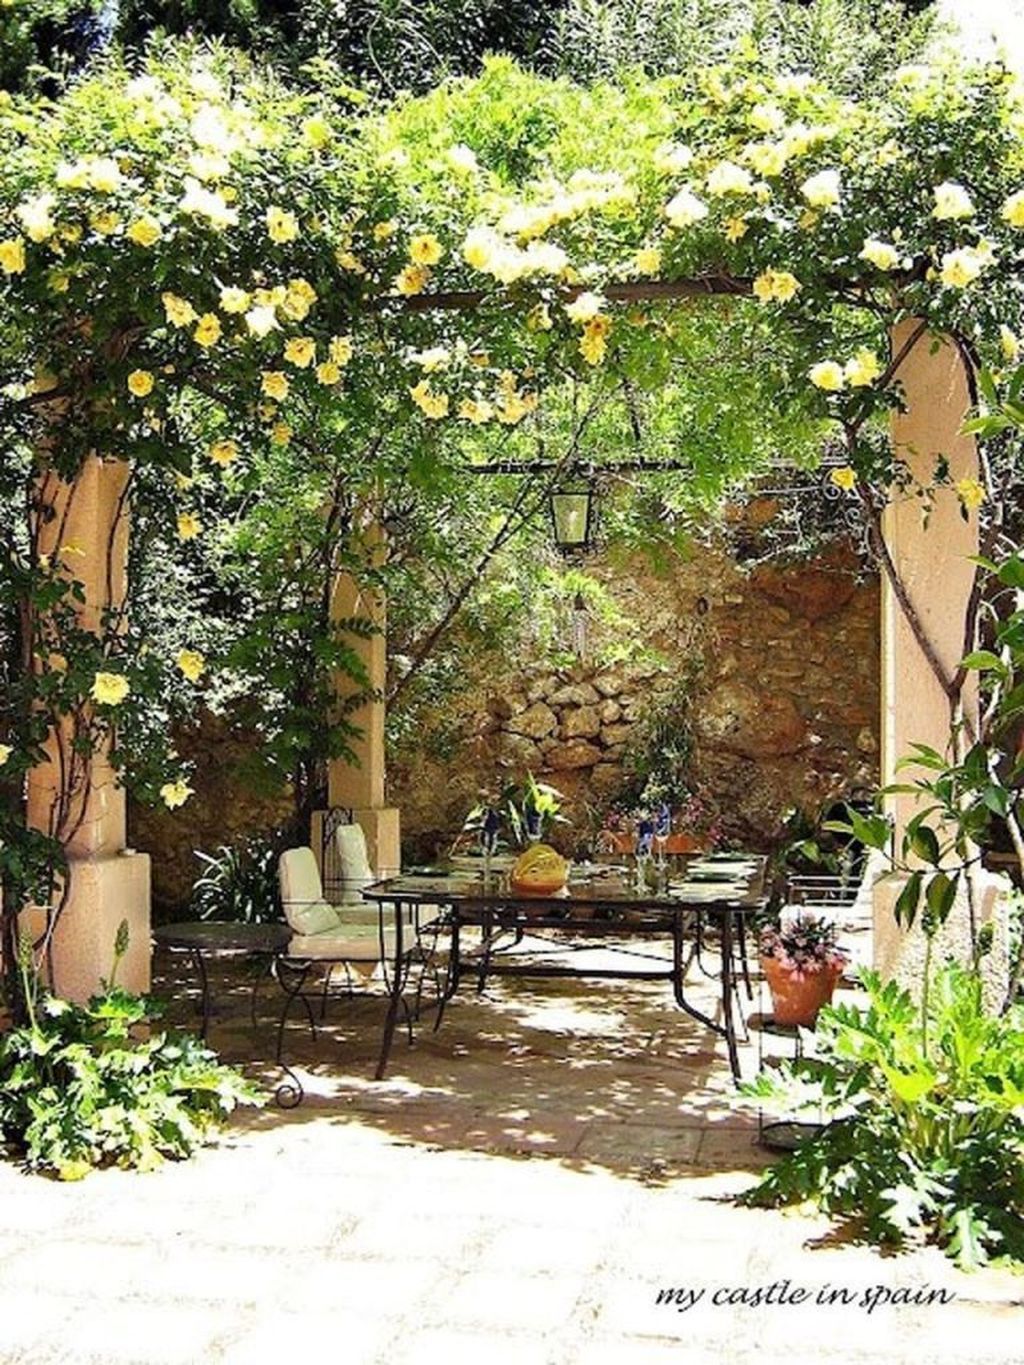 31 Awesome Mediterranean Garden Design Ideas For Your Backyard -   12 garden design Mediterranean backyards ideas